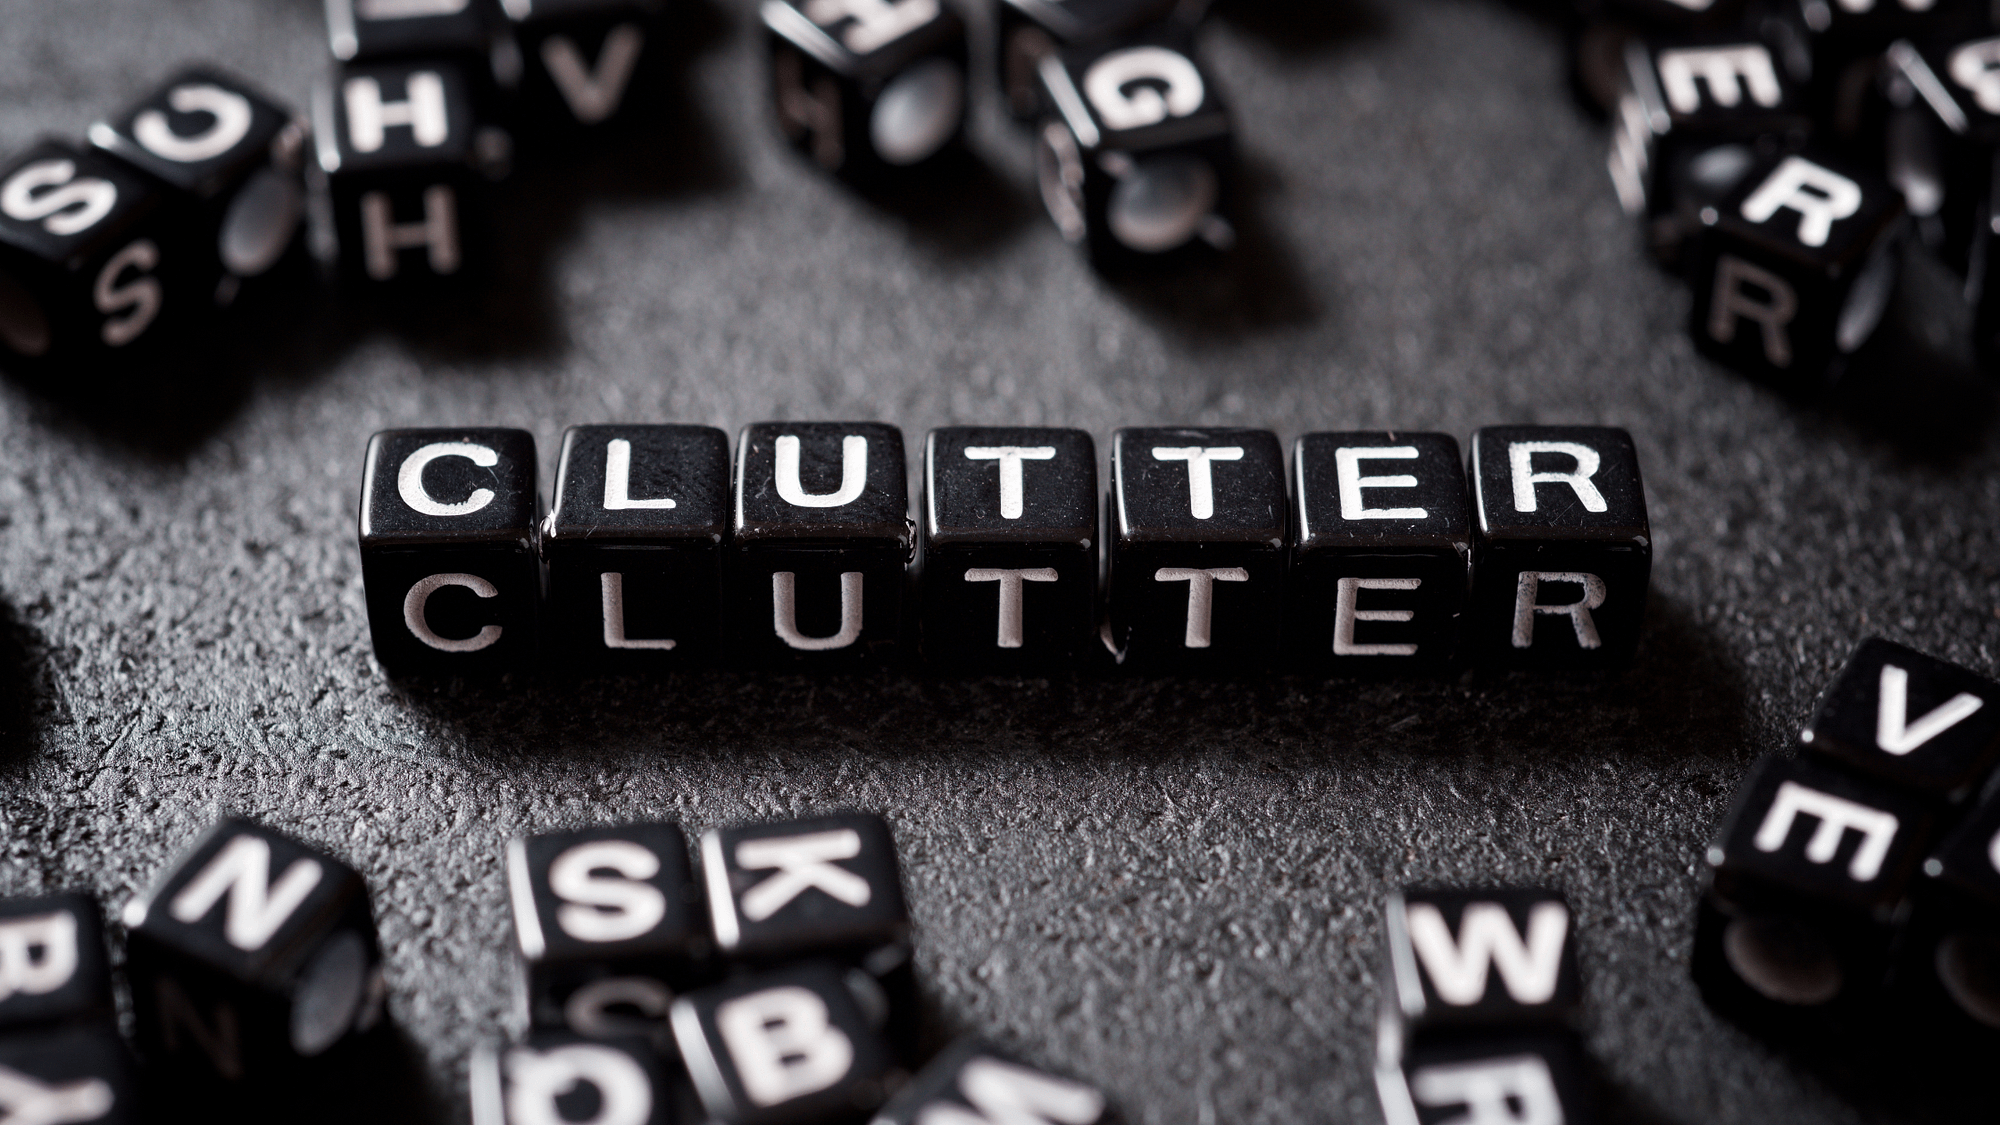 Block Letters Spelling "Clutter"